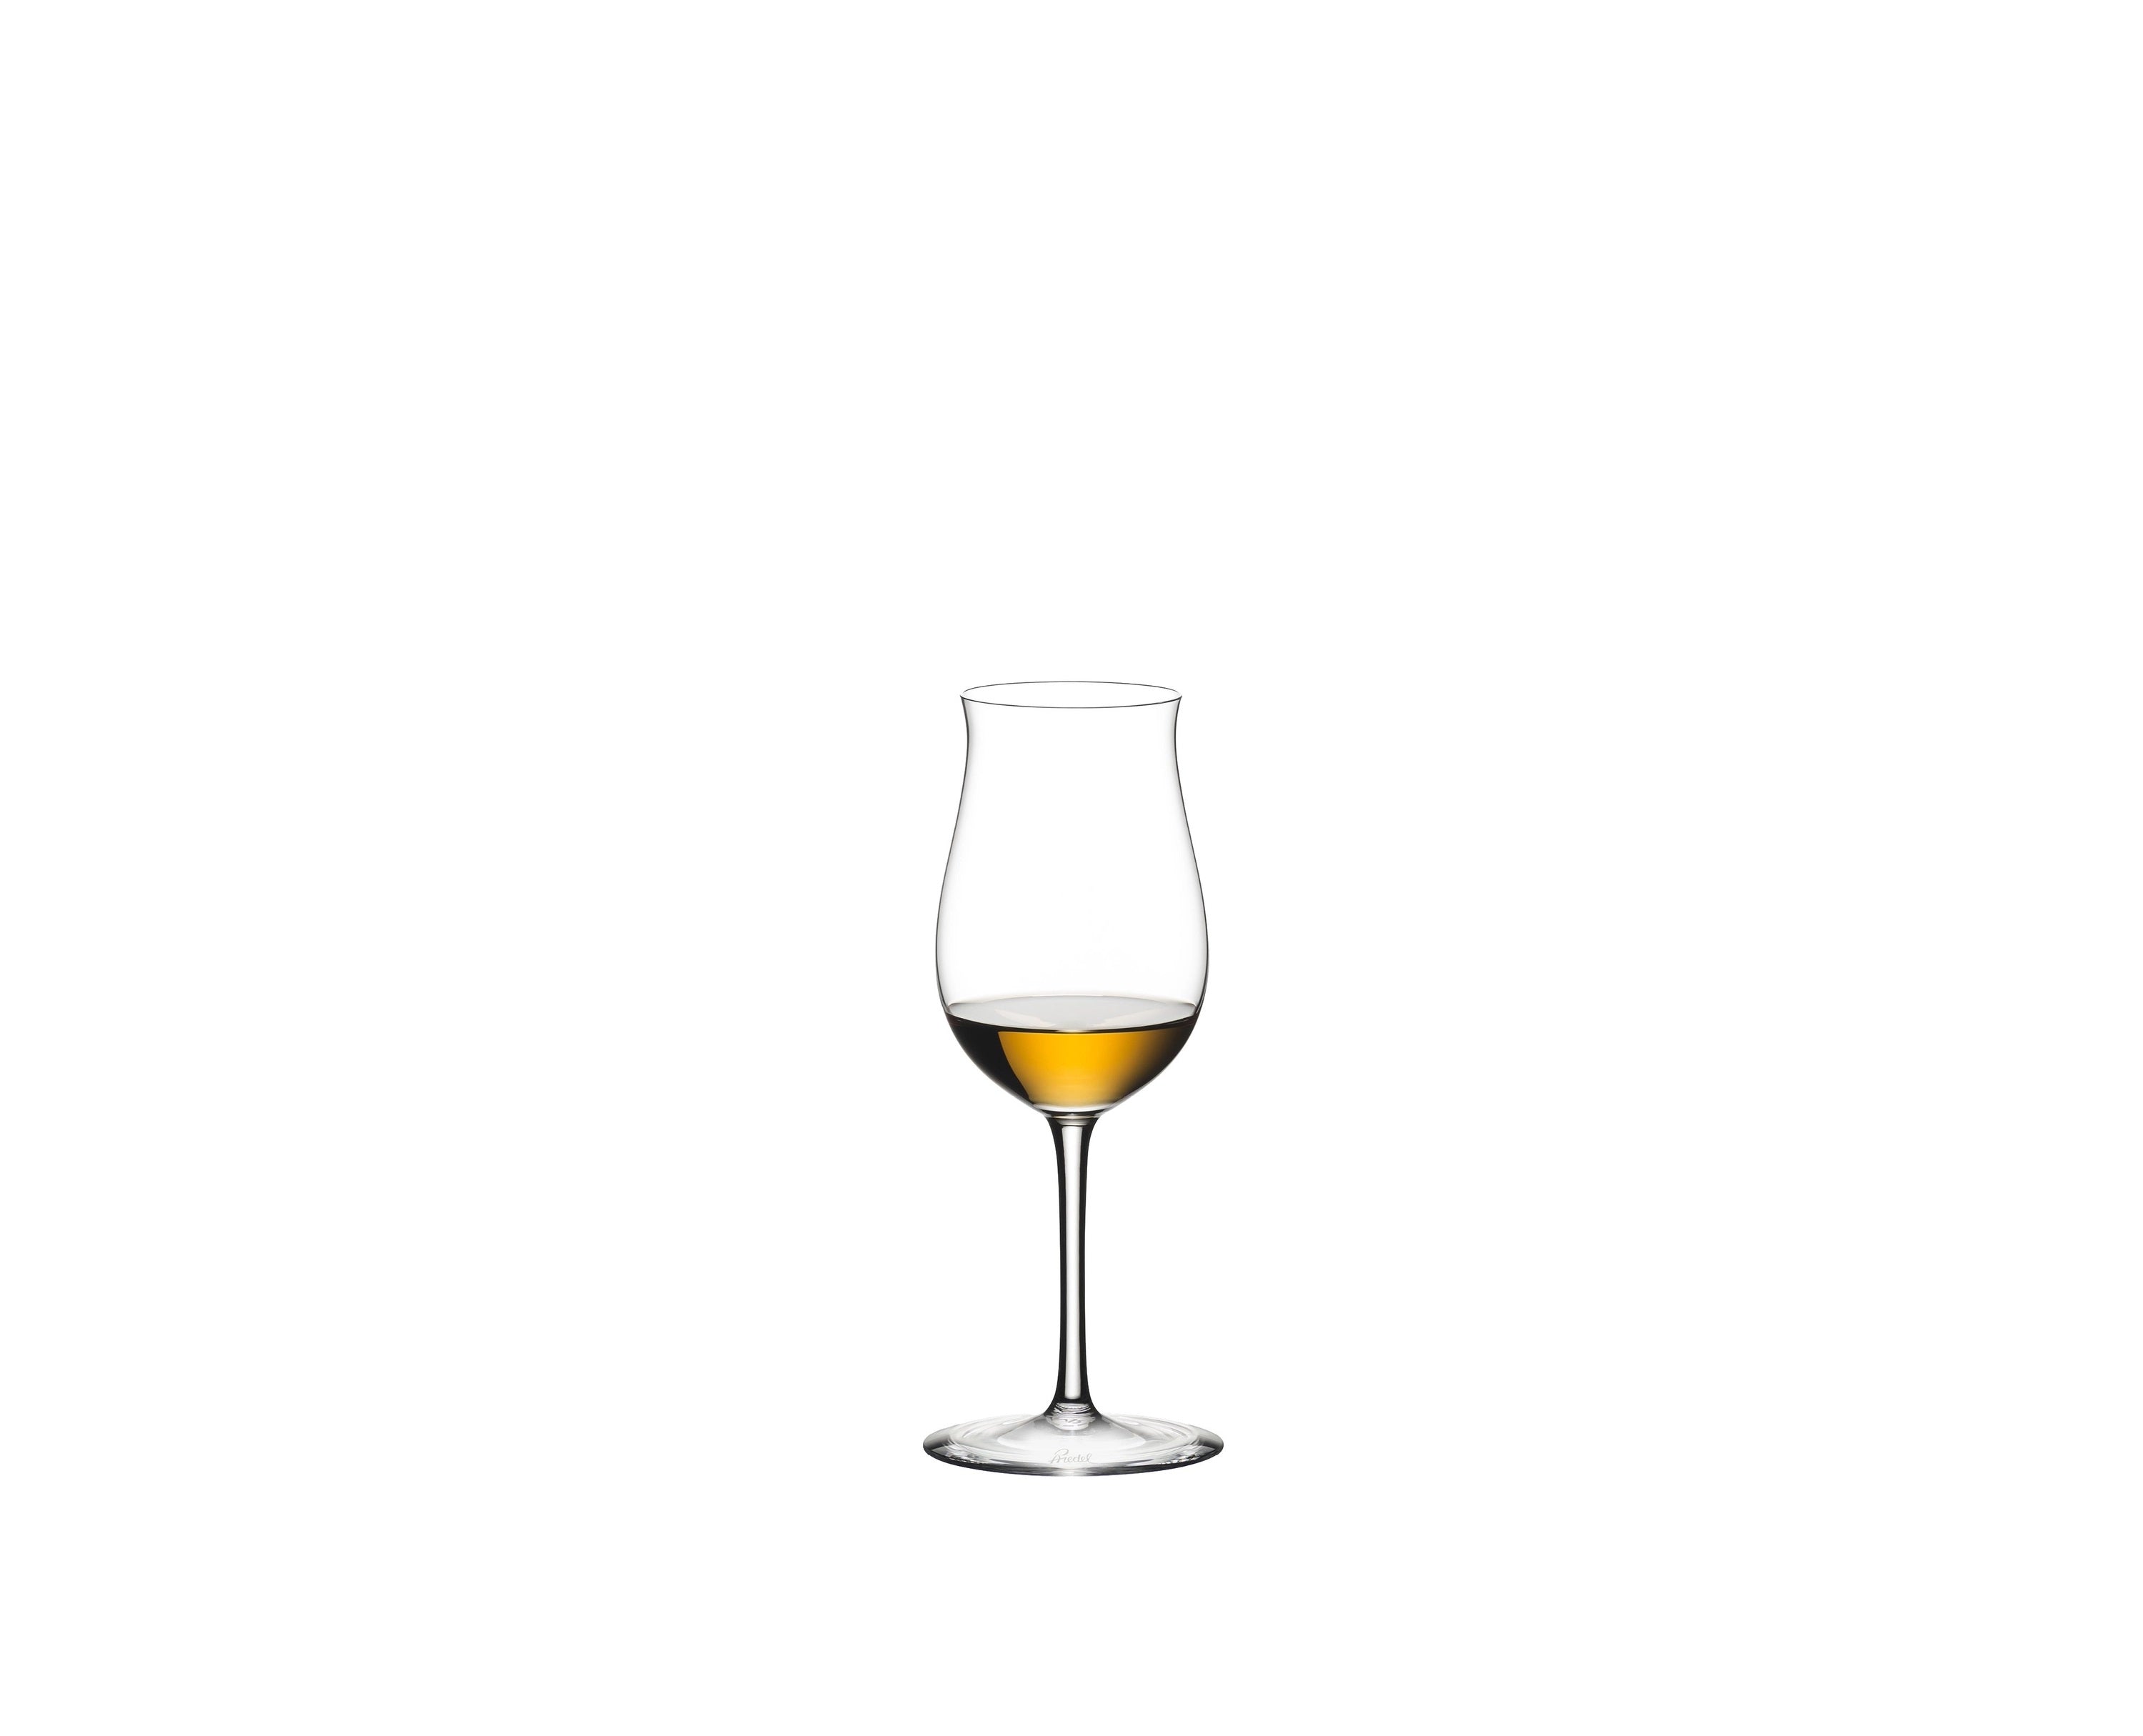 Riedel Sommeliers Vsop Cognac Goblet, Set of 4 pieces